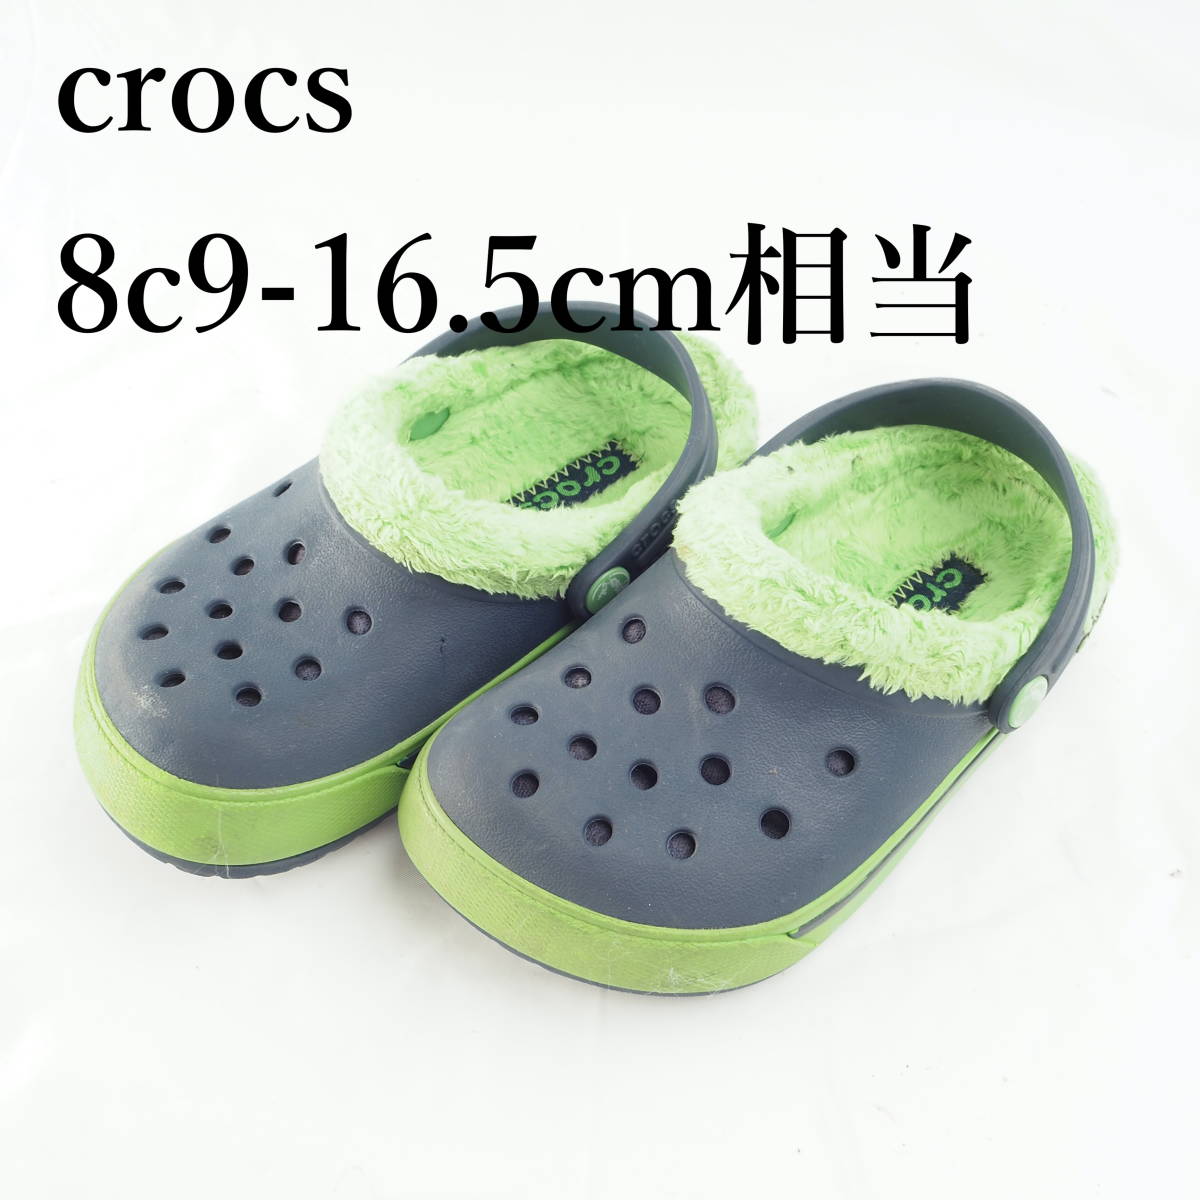 LK2022 crocs 8c9-16.5cm相当 キッズサンダル クロックス 紺×緑 激安超安値 クロックス